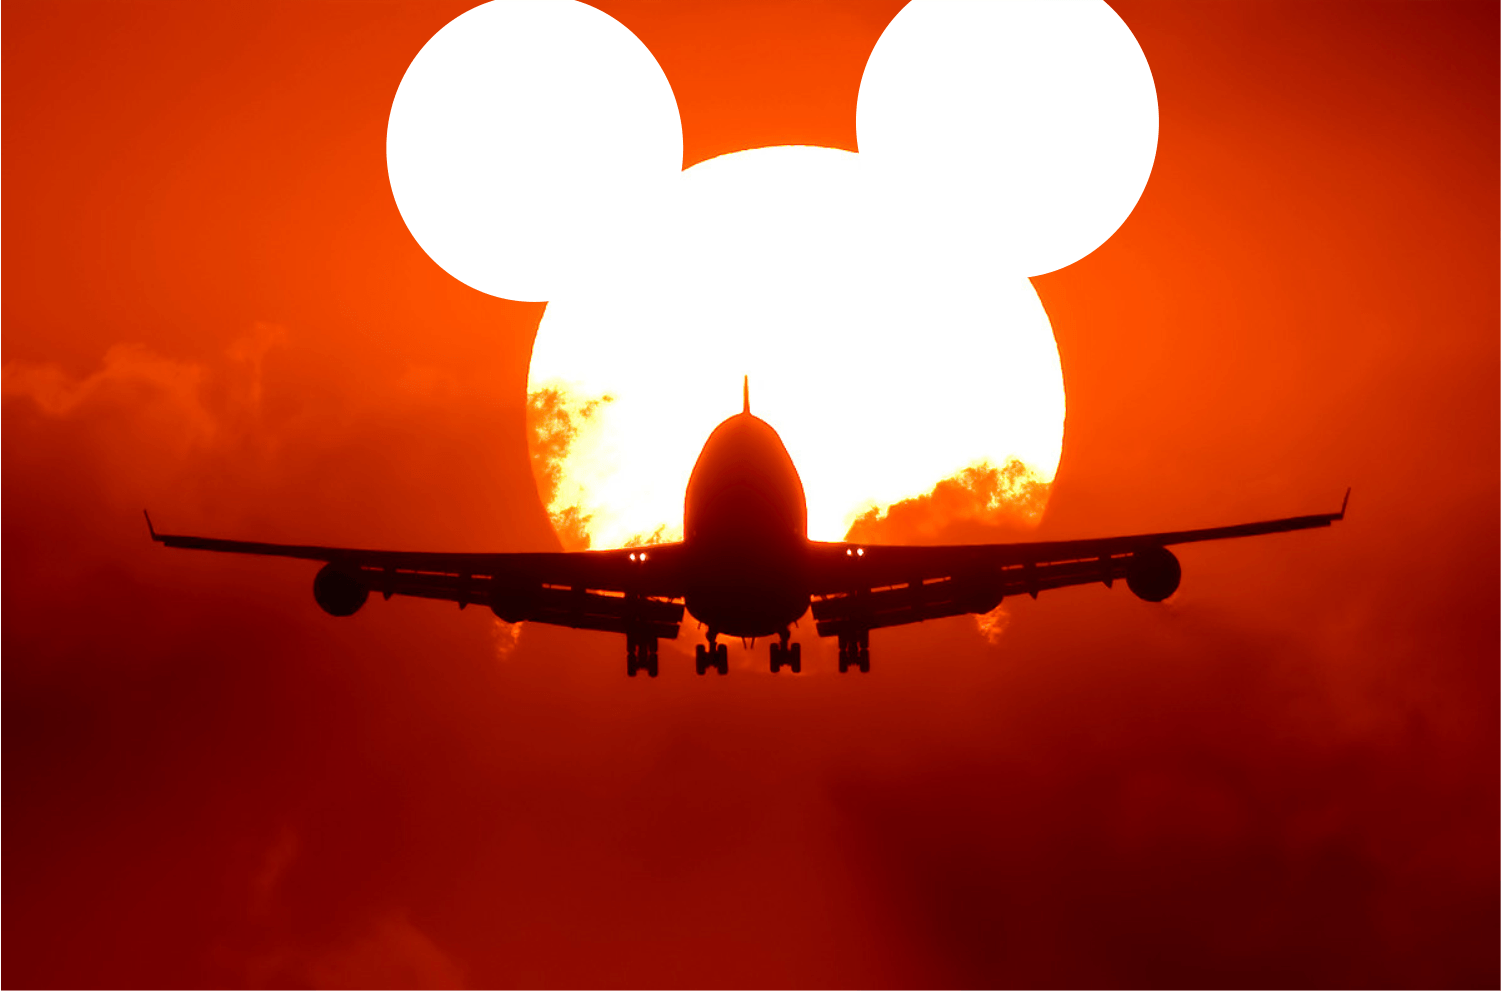 Quanto Custa Viajar para Disney? Veja como economizar!